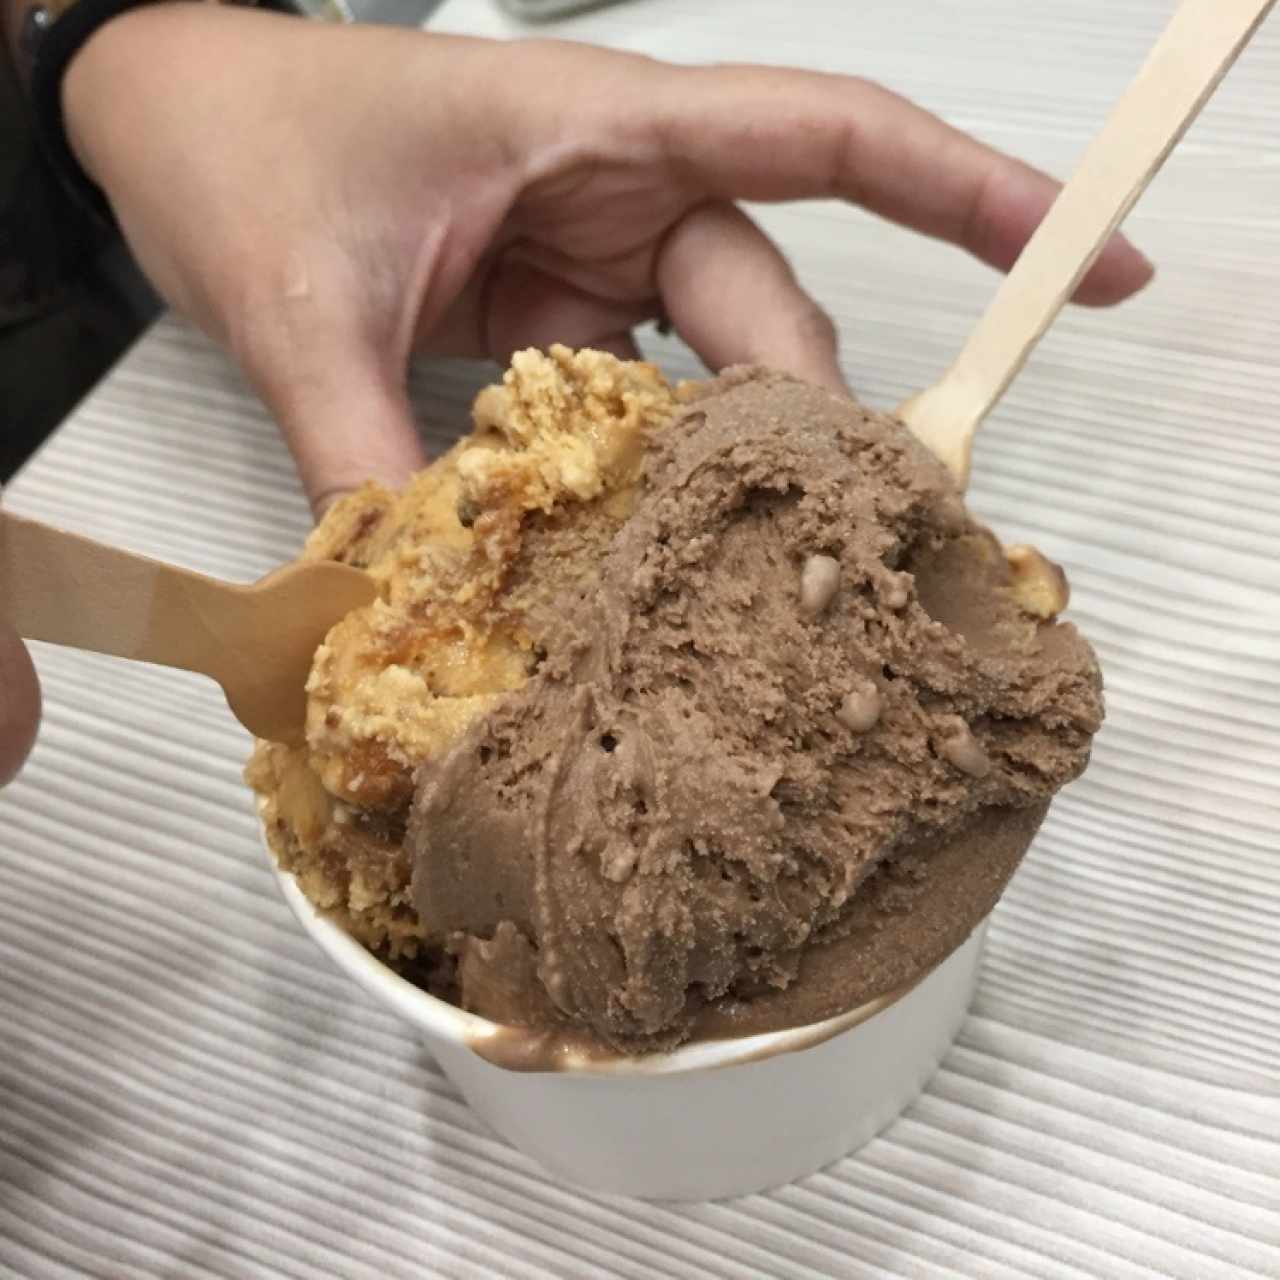 helado dulce de leche y brownie, con helado de chocolate